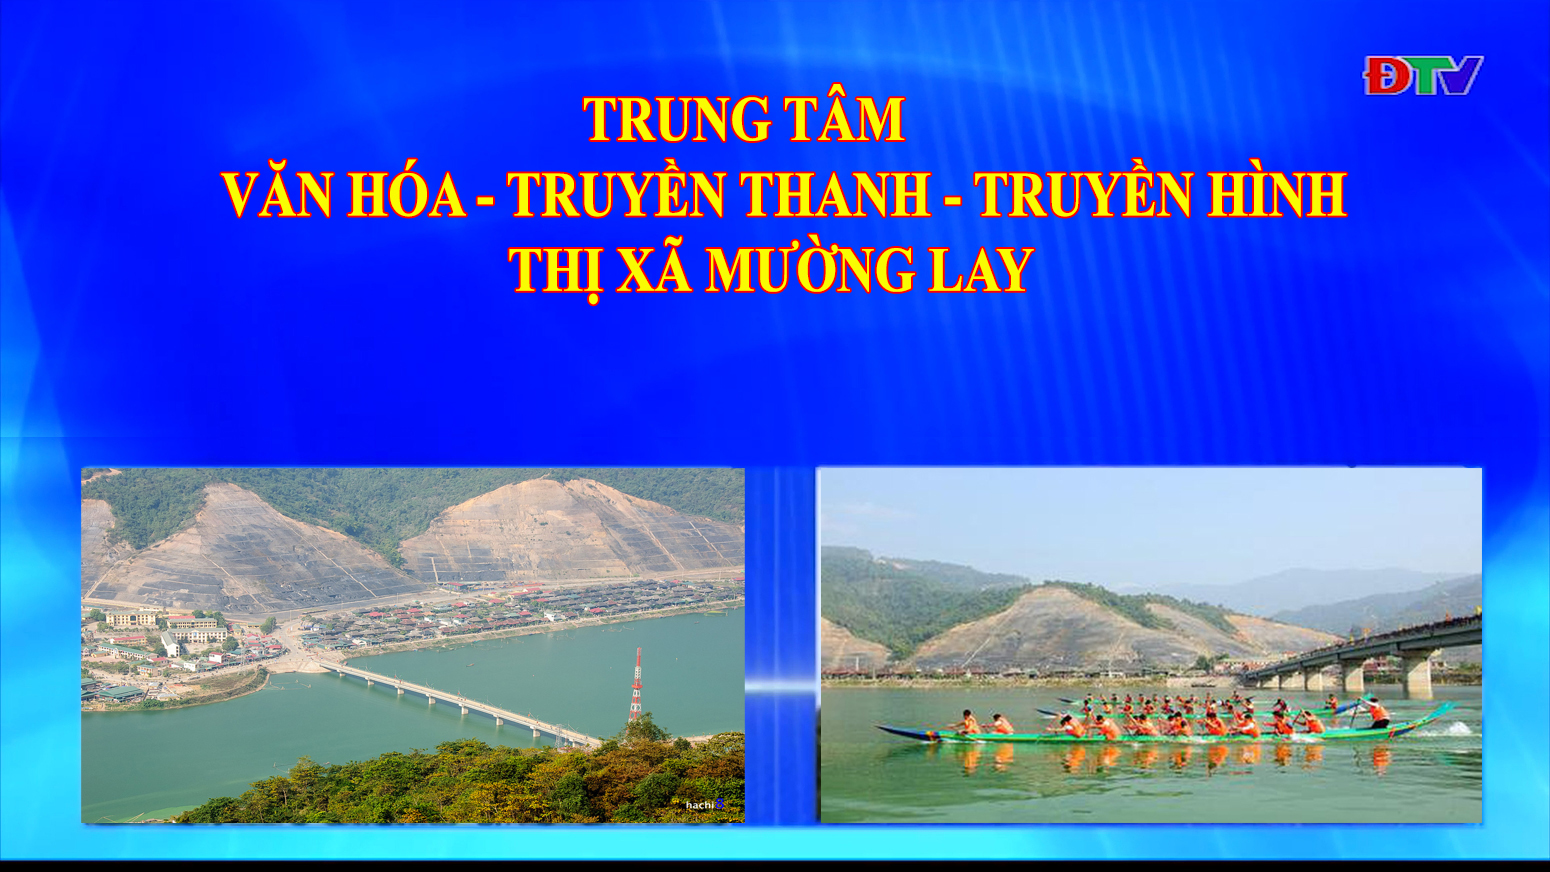 Trung tâm VH-TTTH thị xã Mường Lay (Ngày 9-10-2020)